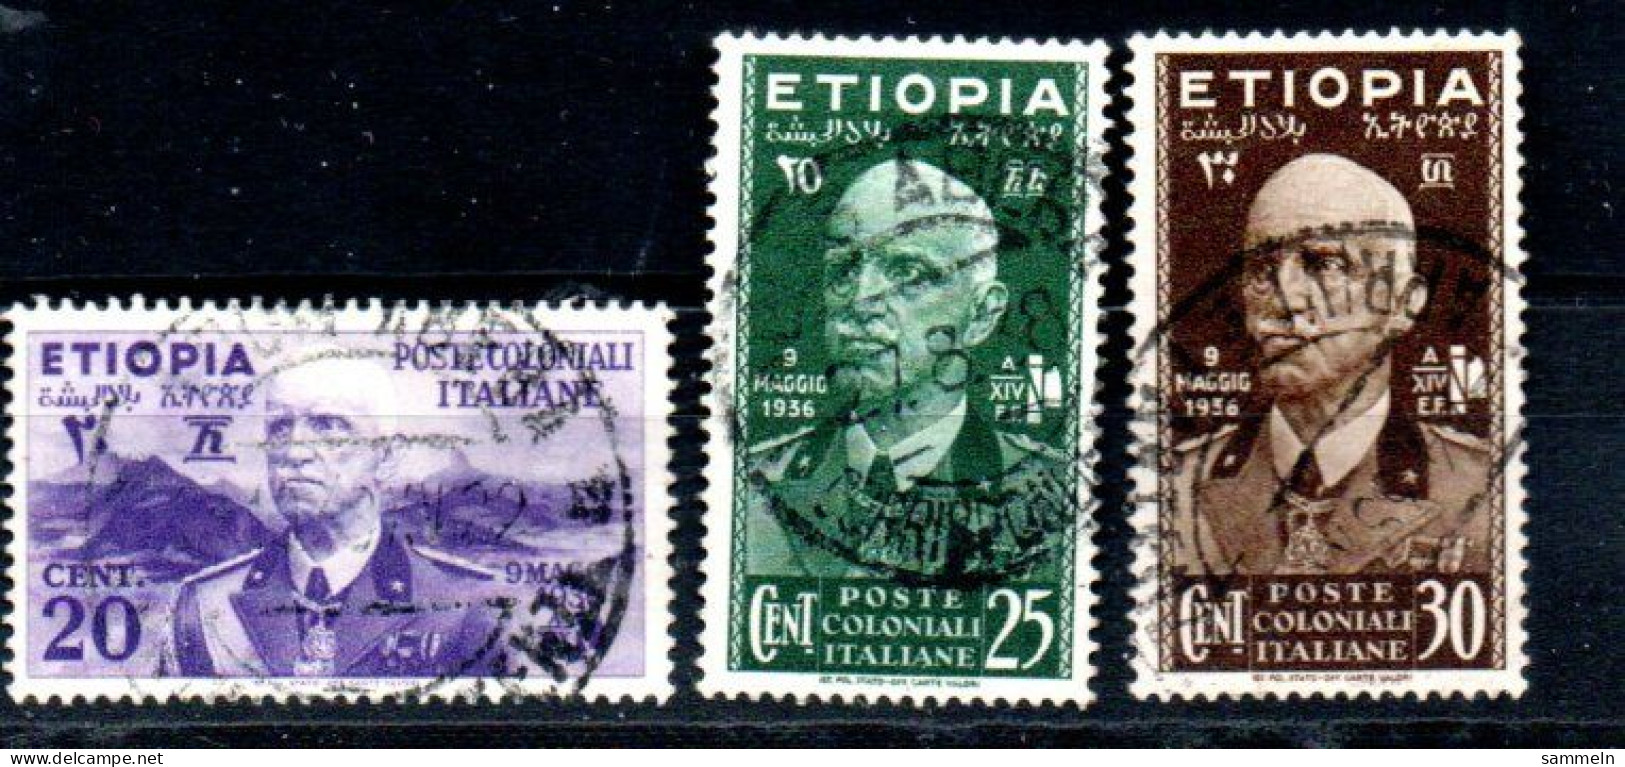 ITALIENISCH-ÄTHIOPIEN 2, 3, 4 Canc Victor Emanuel III Ambe ITALIAN-ETHIOPIE -ETHIOPIA - Ethiopia